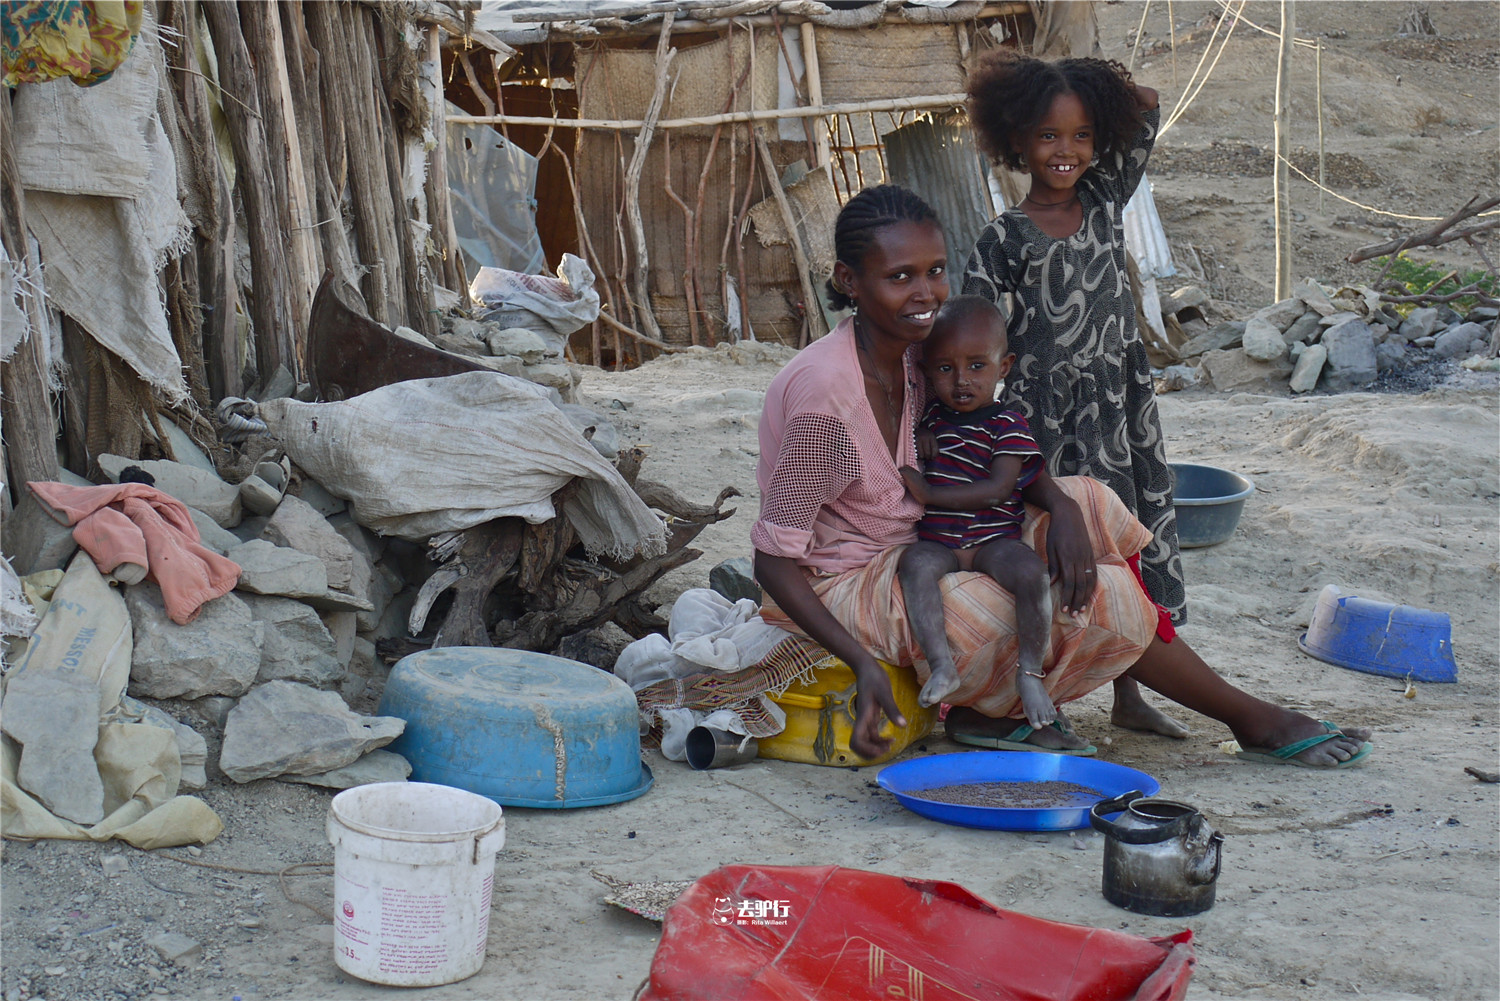 非洲最艰难的山村:孩子吃土填报肚子,村民自制咖啡卖给游客